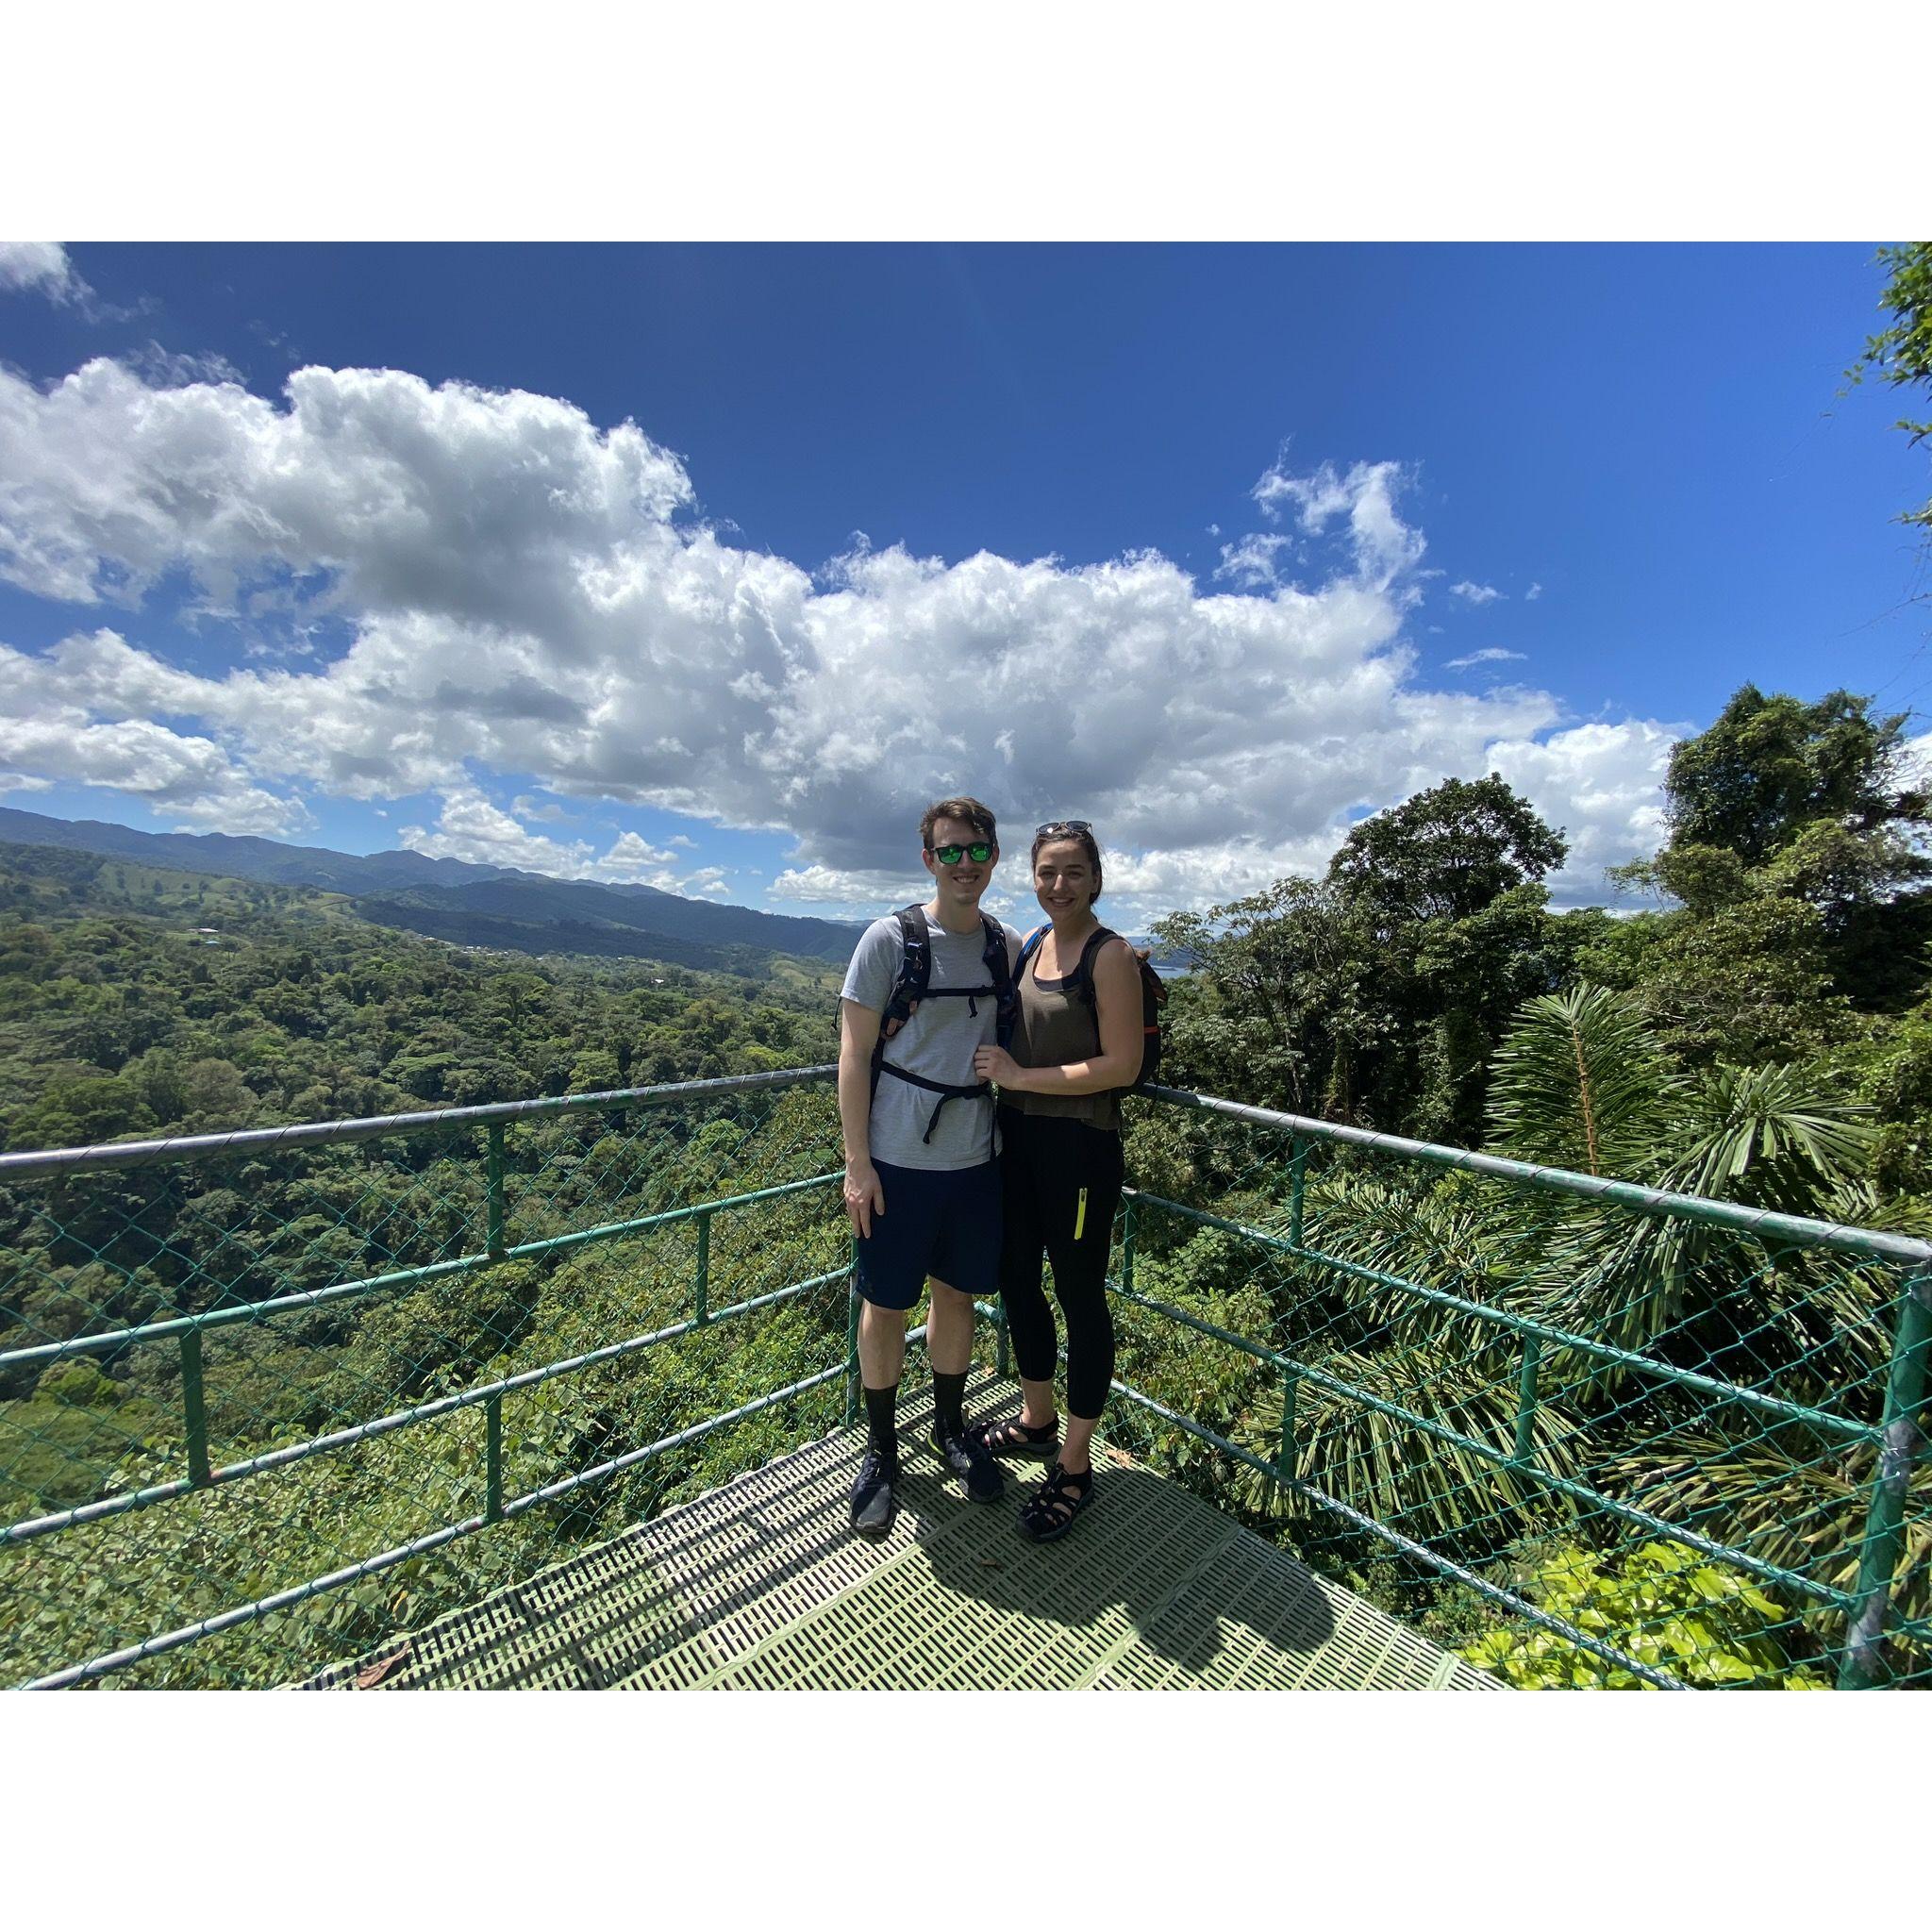 Hiking in Costa Rica, 2020